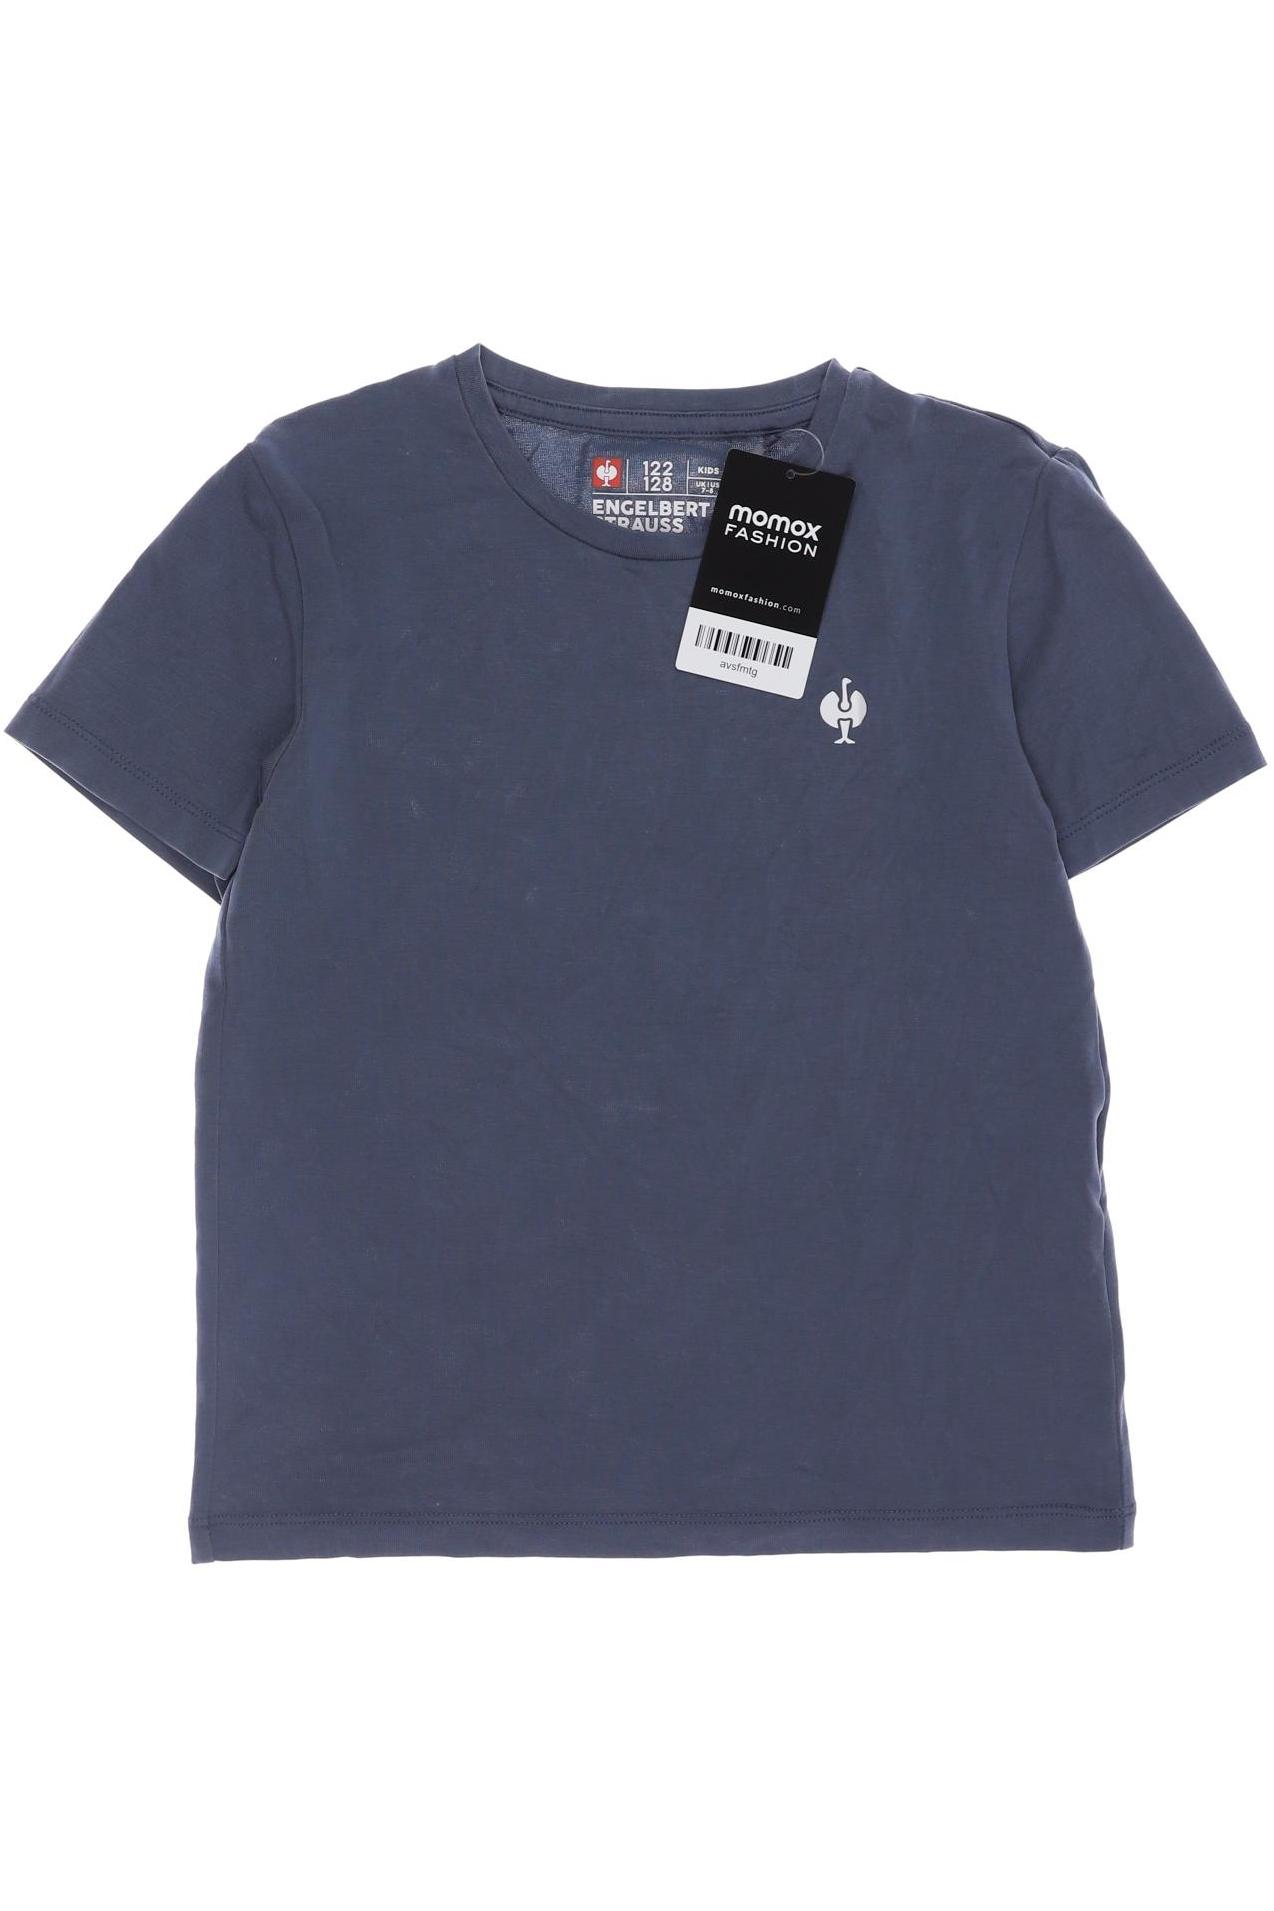 engelbert strauss Herren T-Shirt, blau, Gr. 122 von engelbert strauss